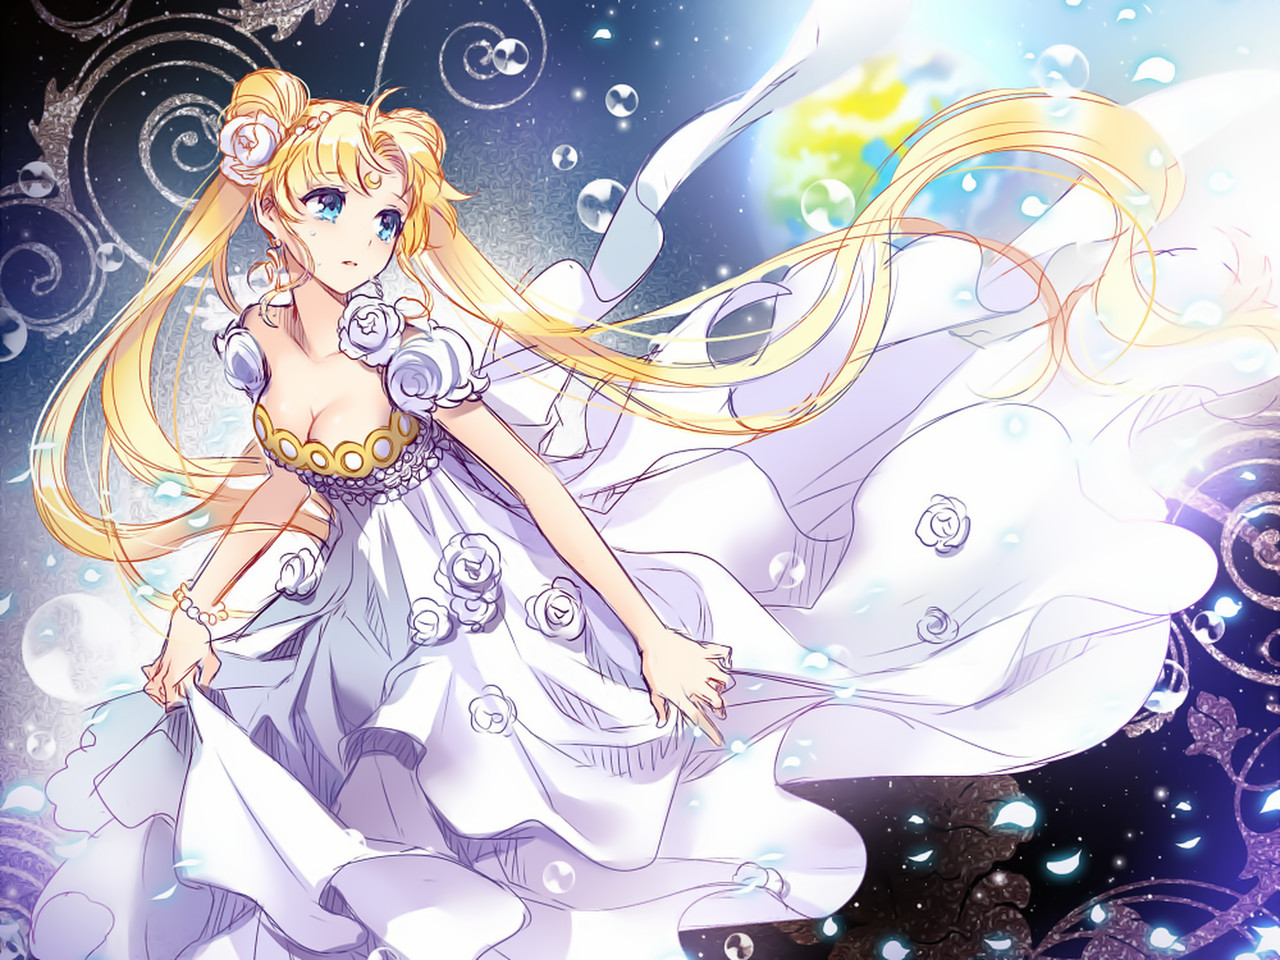 33+] Anime Moon Princess Wallpapers - WallpaperSafari